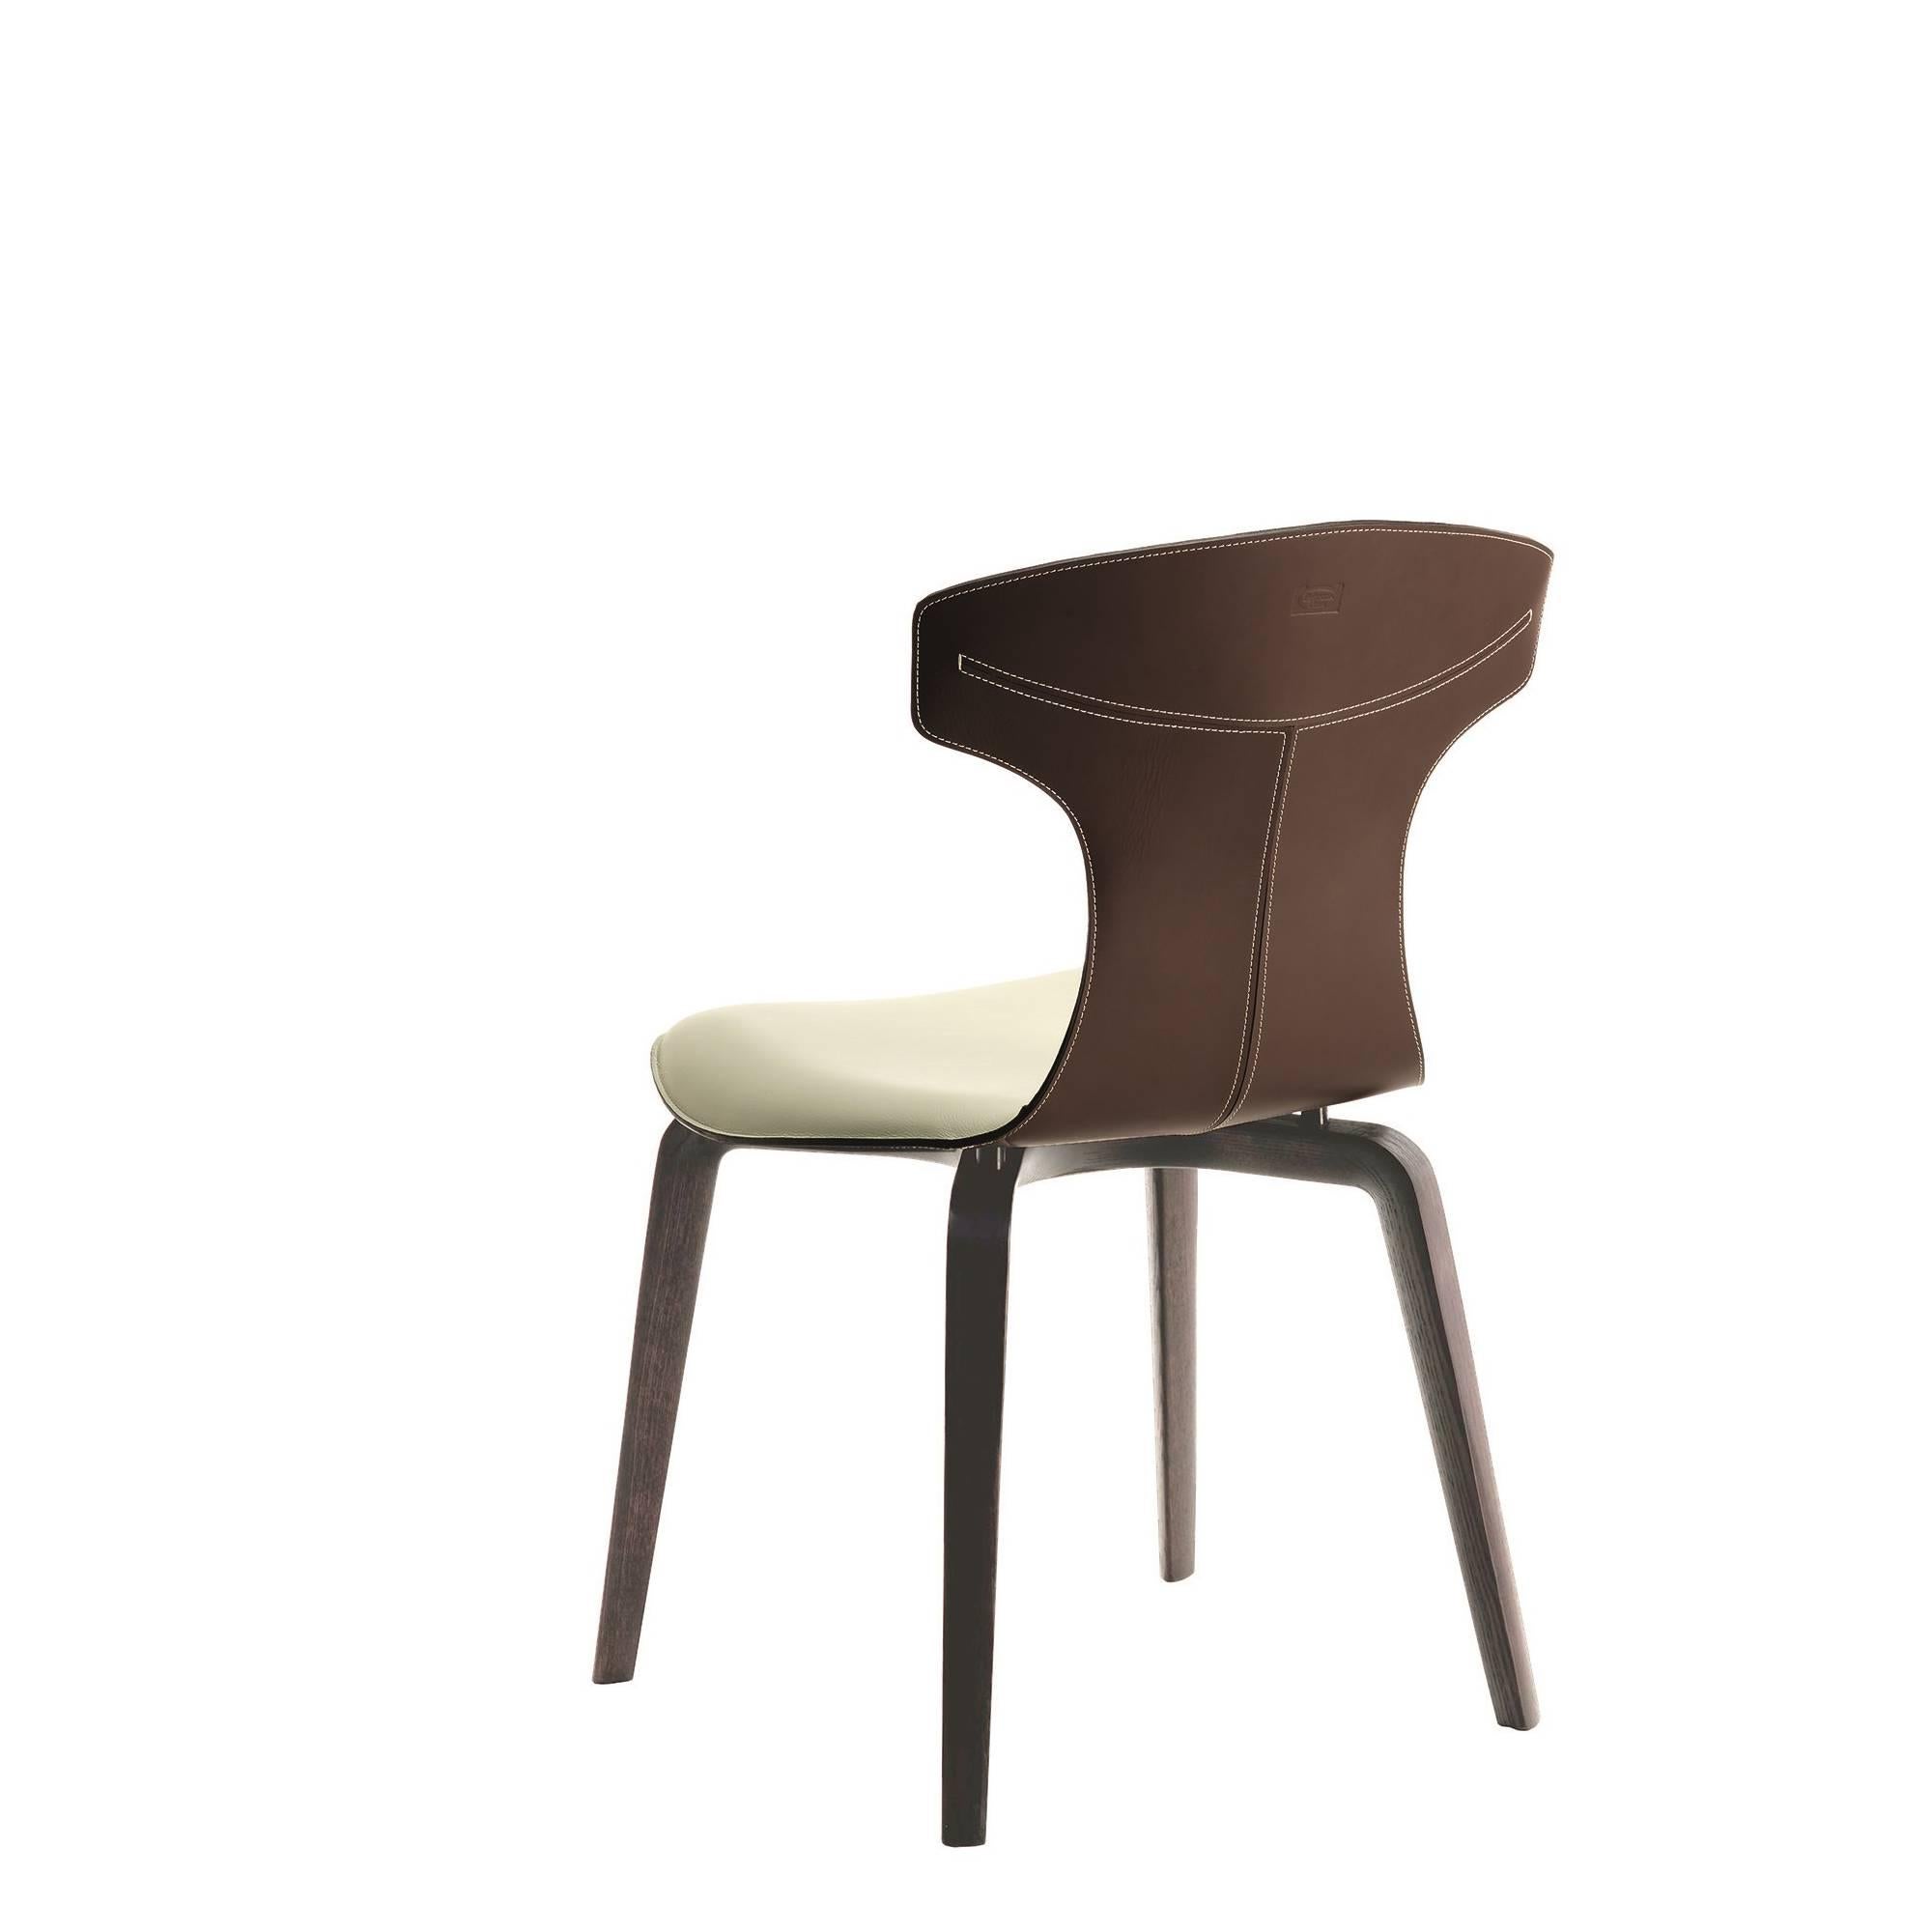 La chaise Montera, conçue par Roberto Lazzeroni pour Poltrona Frau, a une légèreté formelle qui exprime le charme sensoriel de ses matériaux : le traitement brut de coupe exalte la tactilité du cuir de selle et du cuir qui, combinés ensemble, se